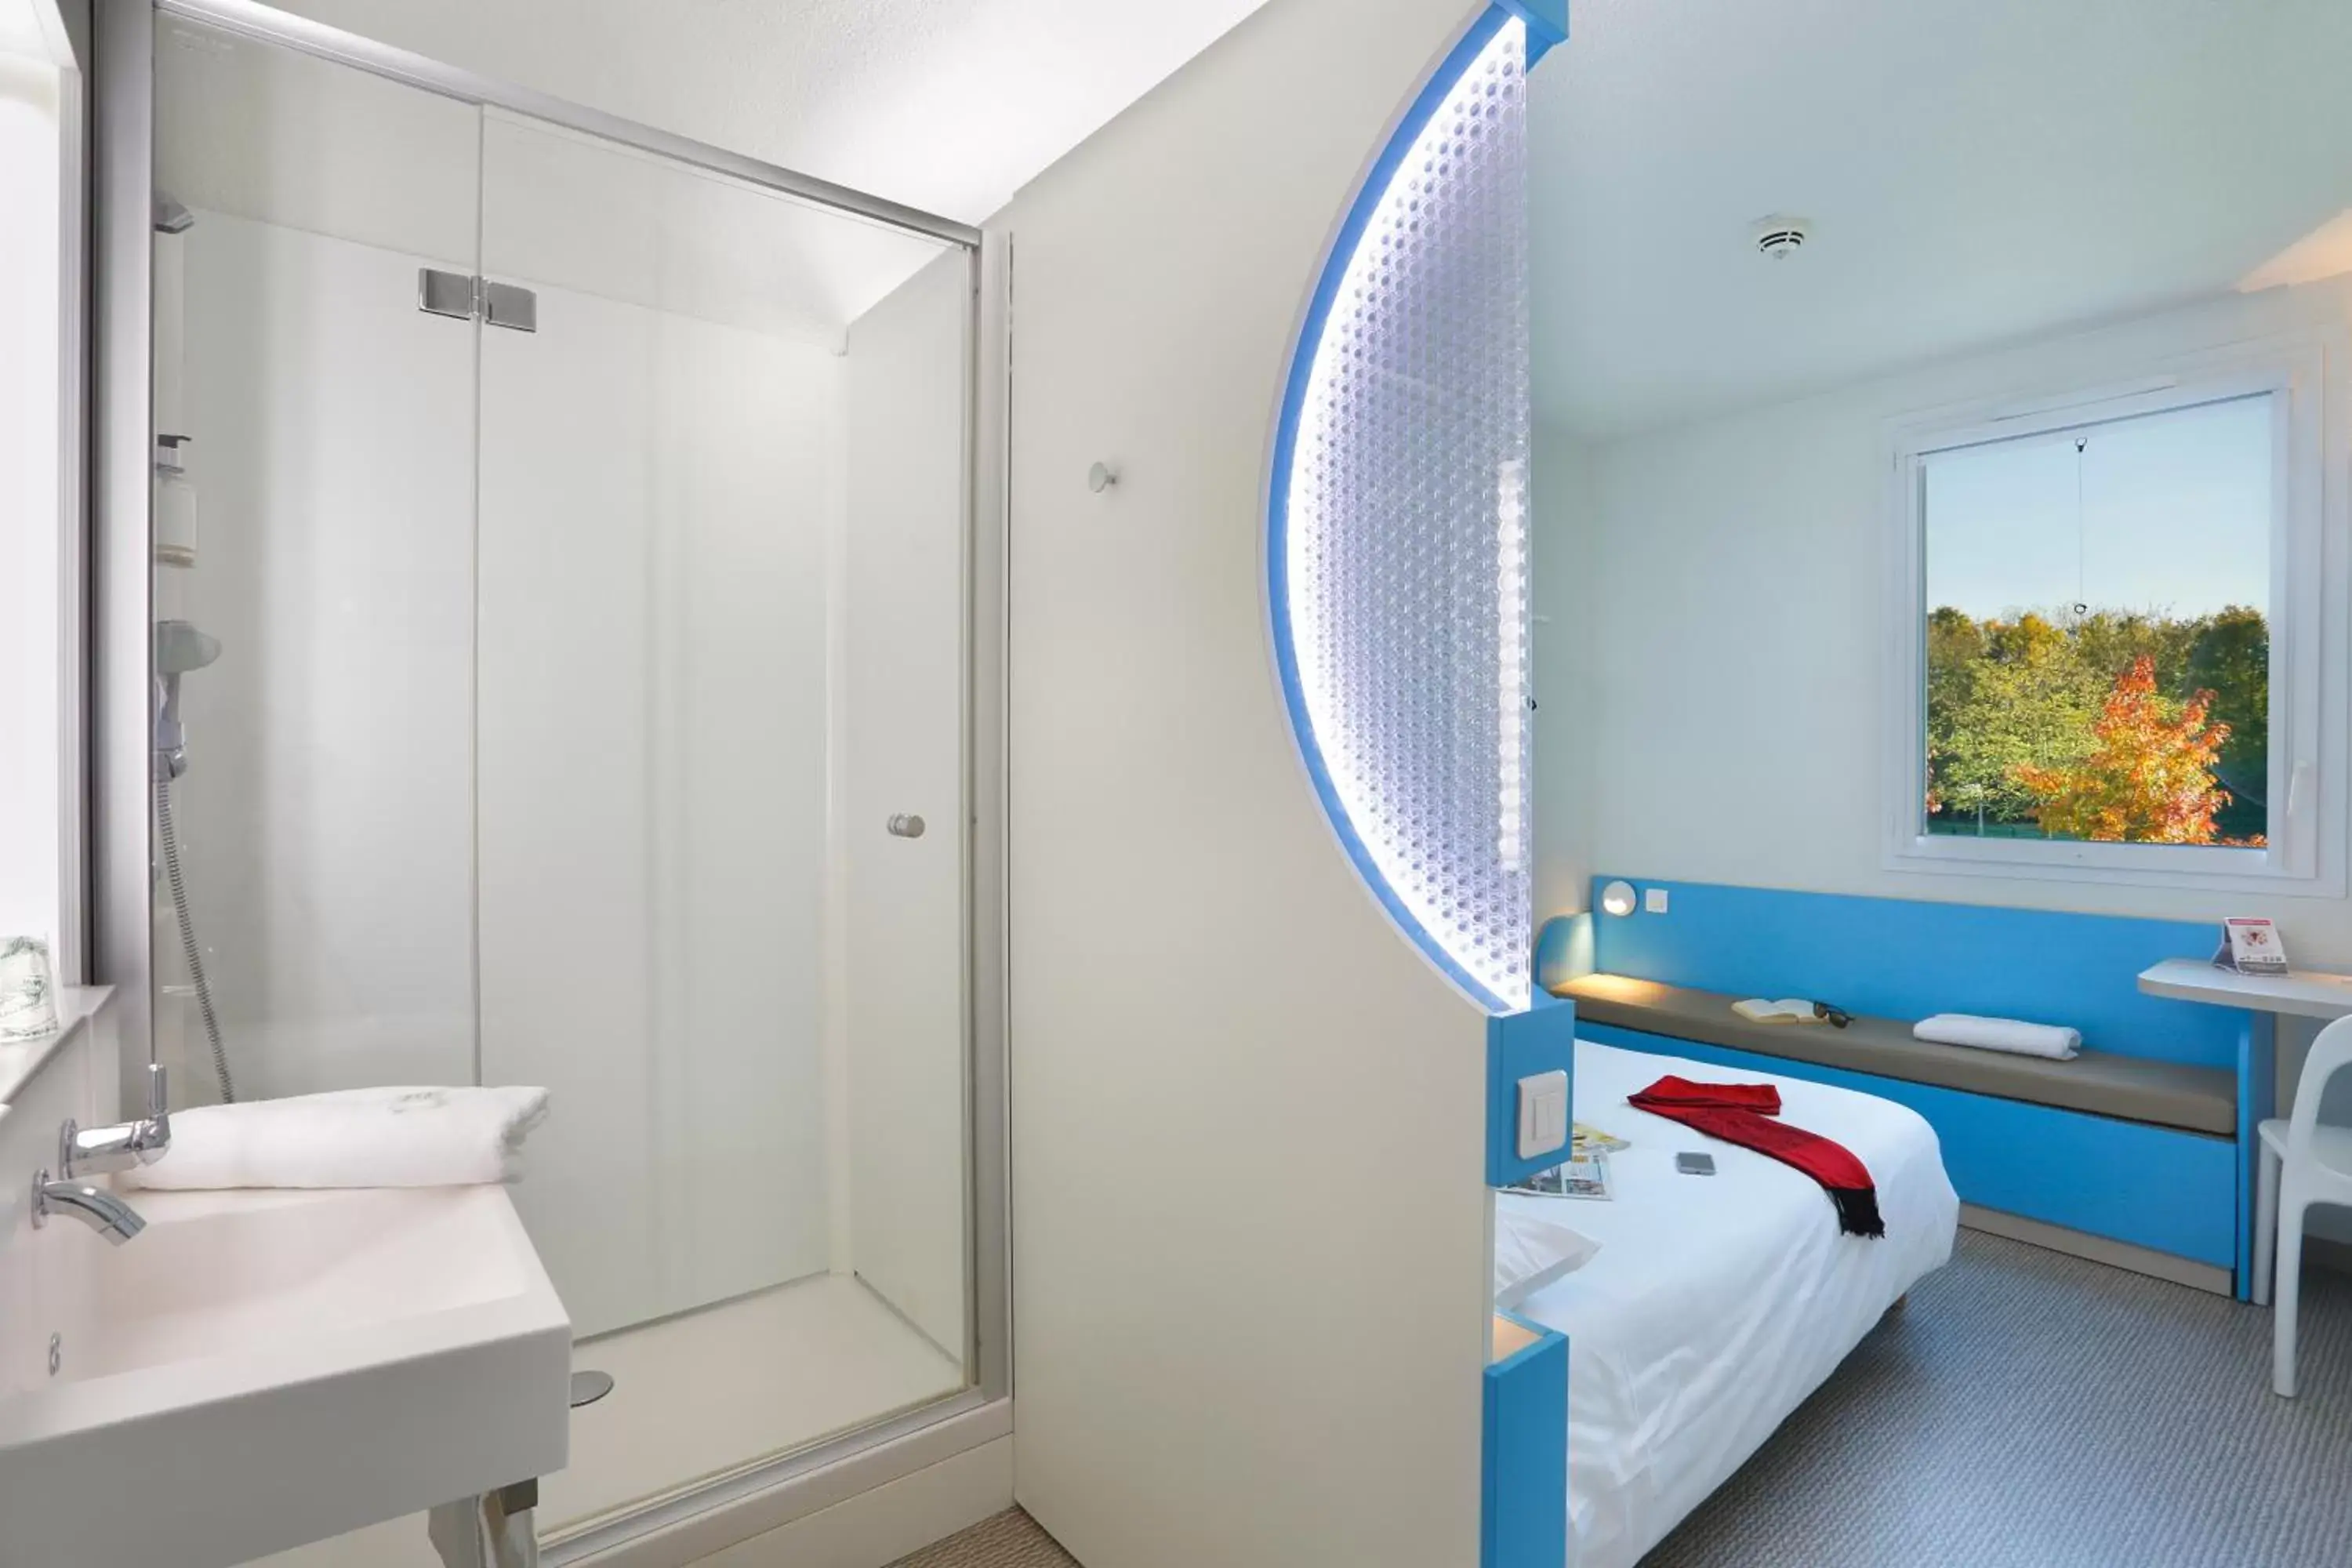 Bedroom, Bathroom in First Inn Hotel Paris Sud Les Ulis